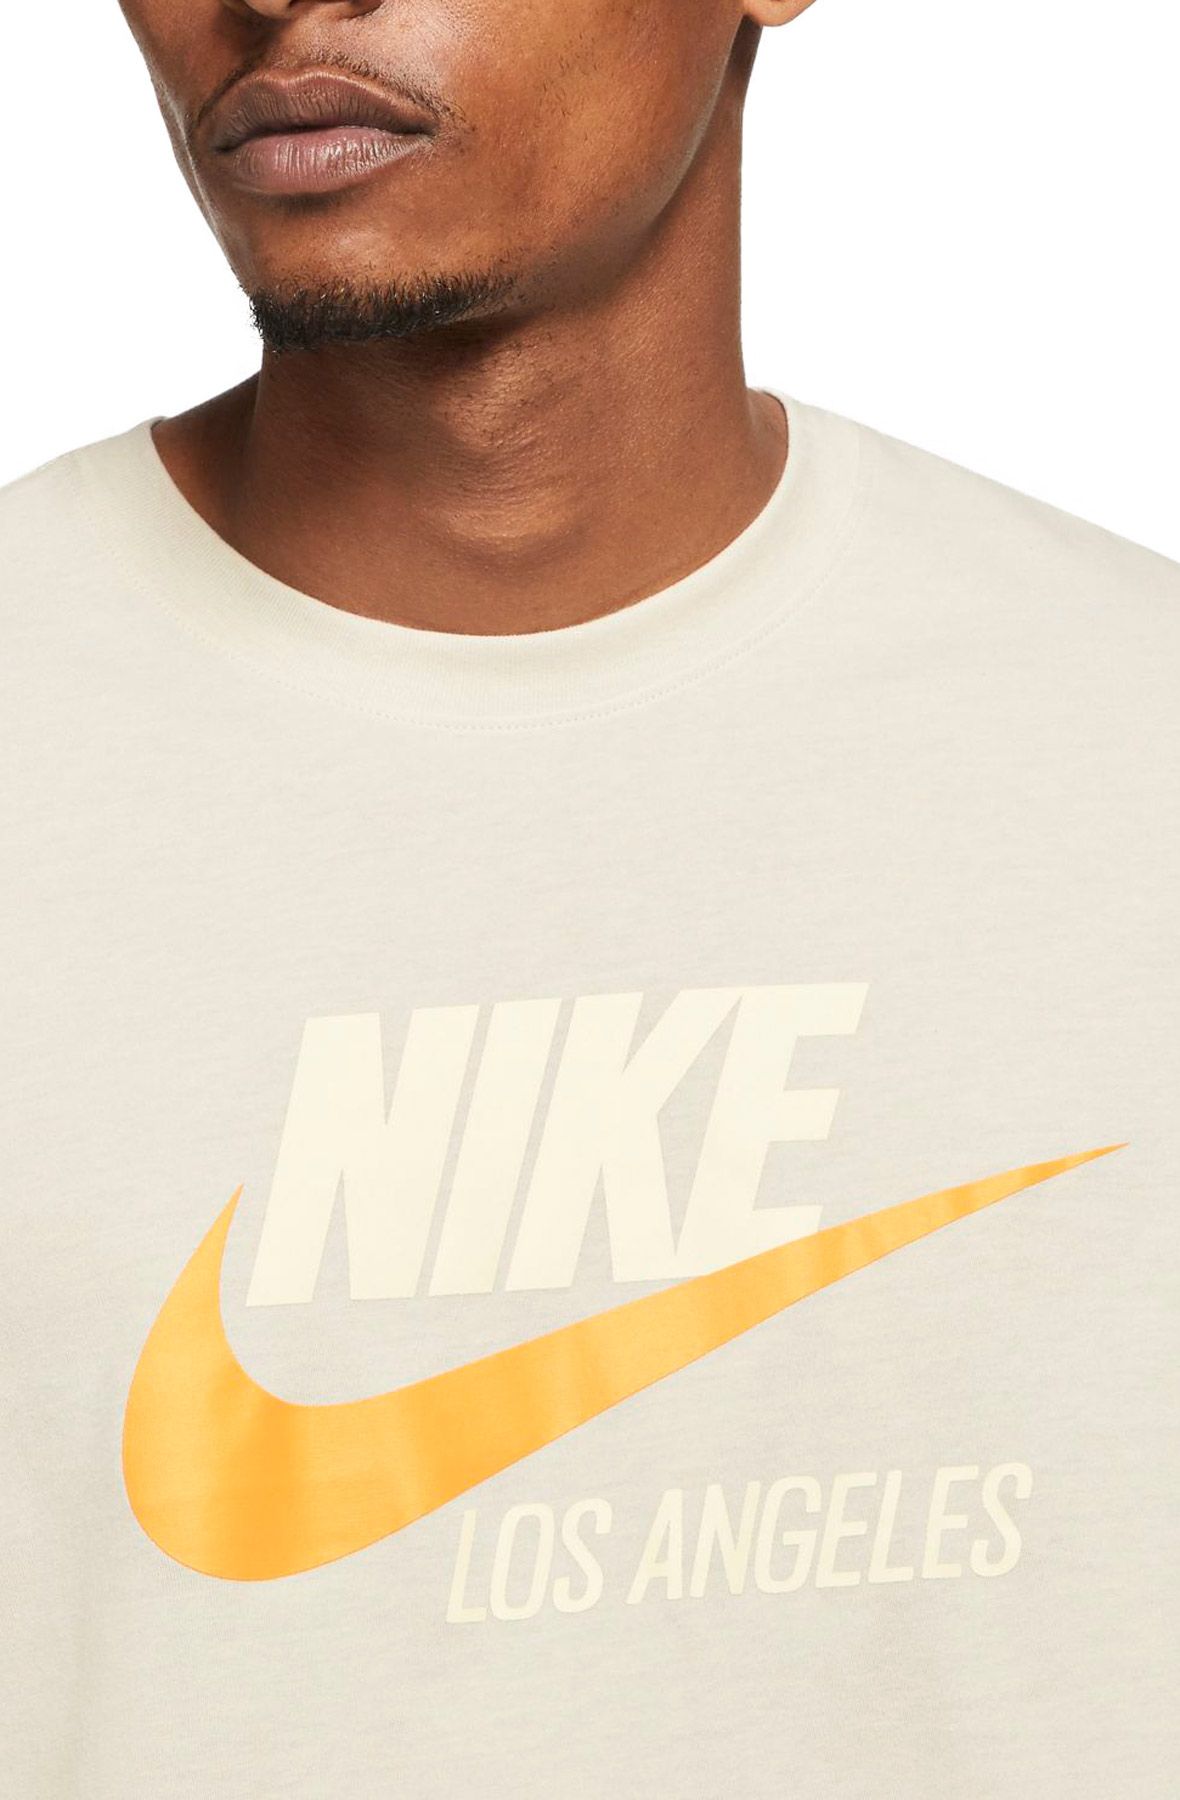 Nike Sportswear Los Angeles Long Sleeve T-Shirt